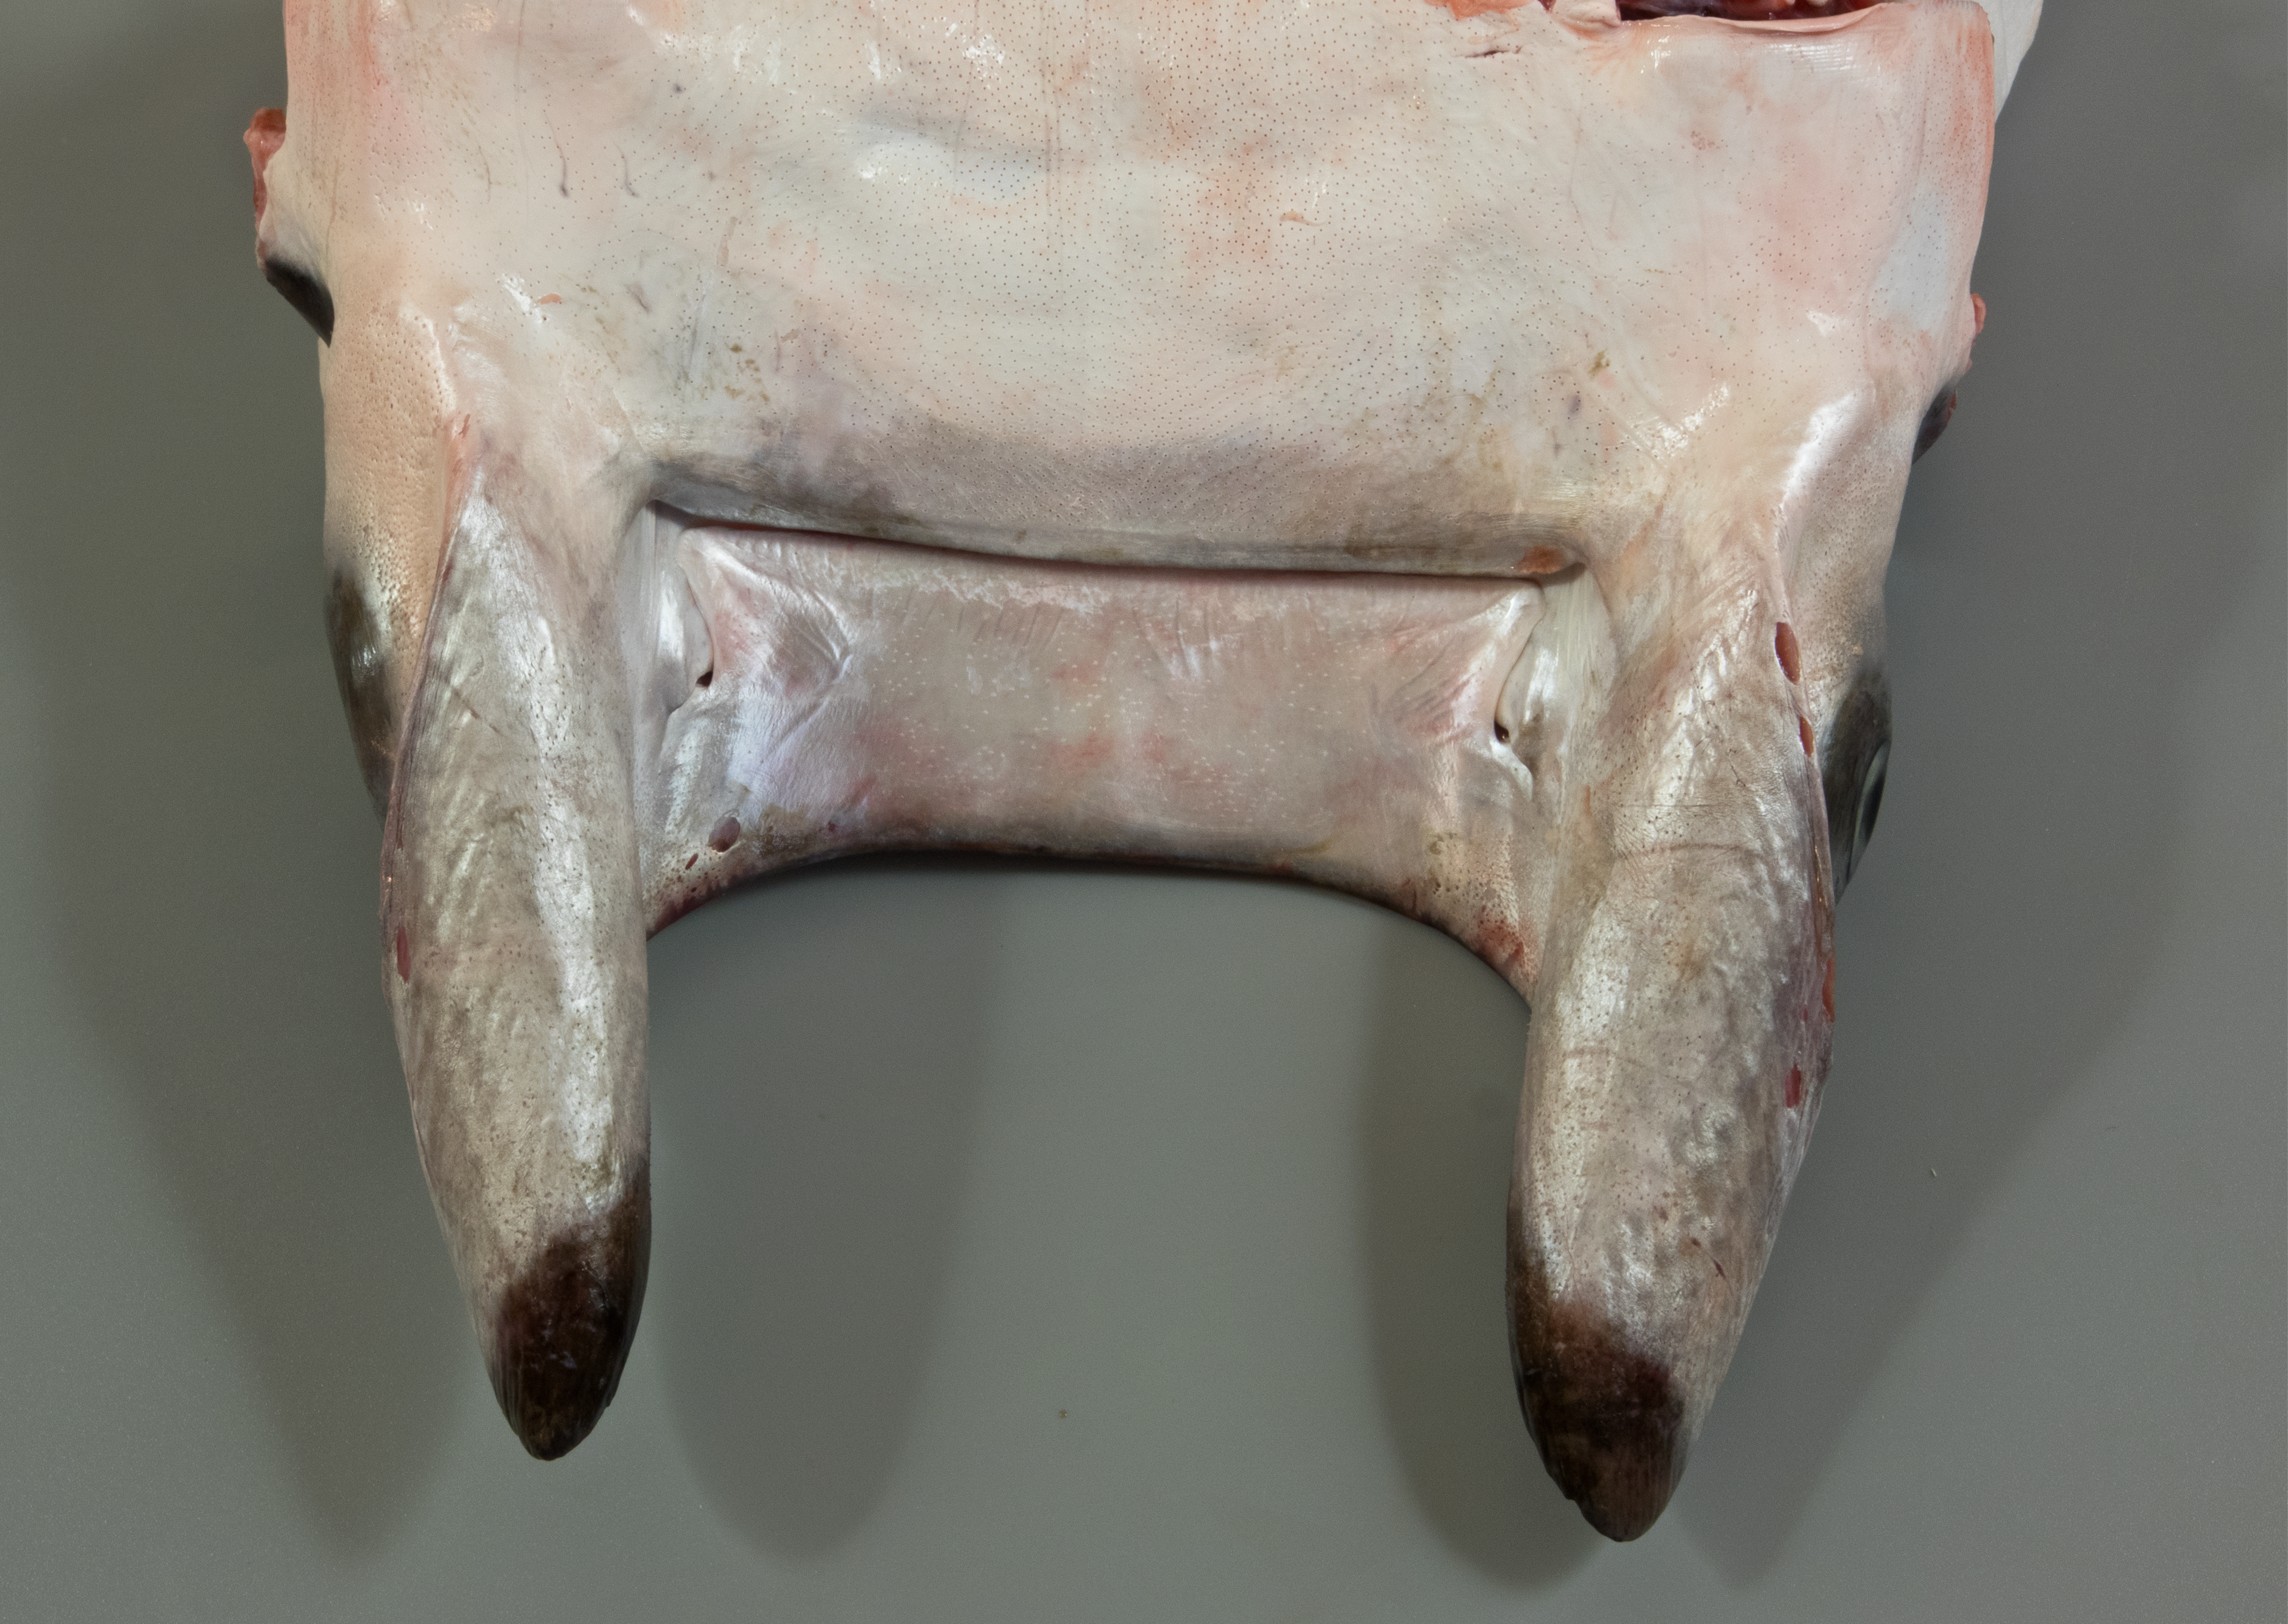 Mobula kuhlii, head width 13.5 cm, underside of head, Socotra: Hadibo; S.V. Bogorodsky & U. Zajonz